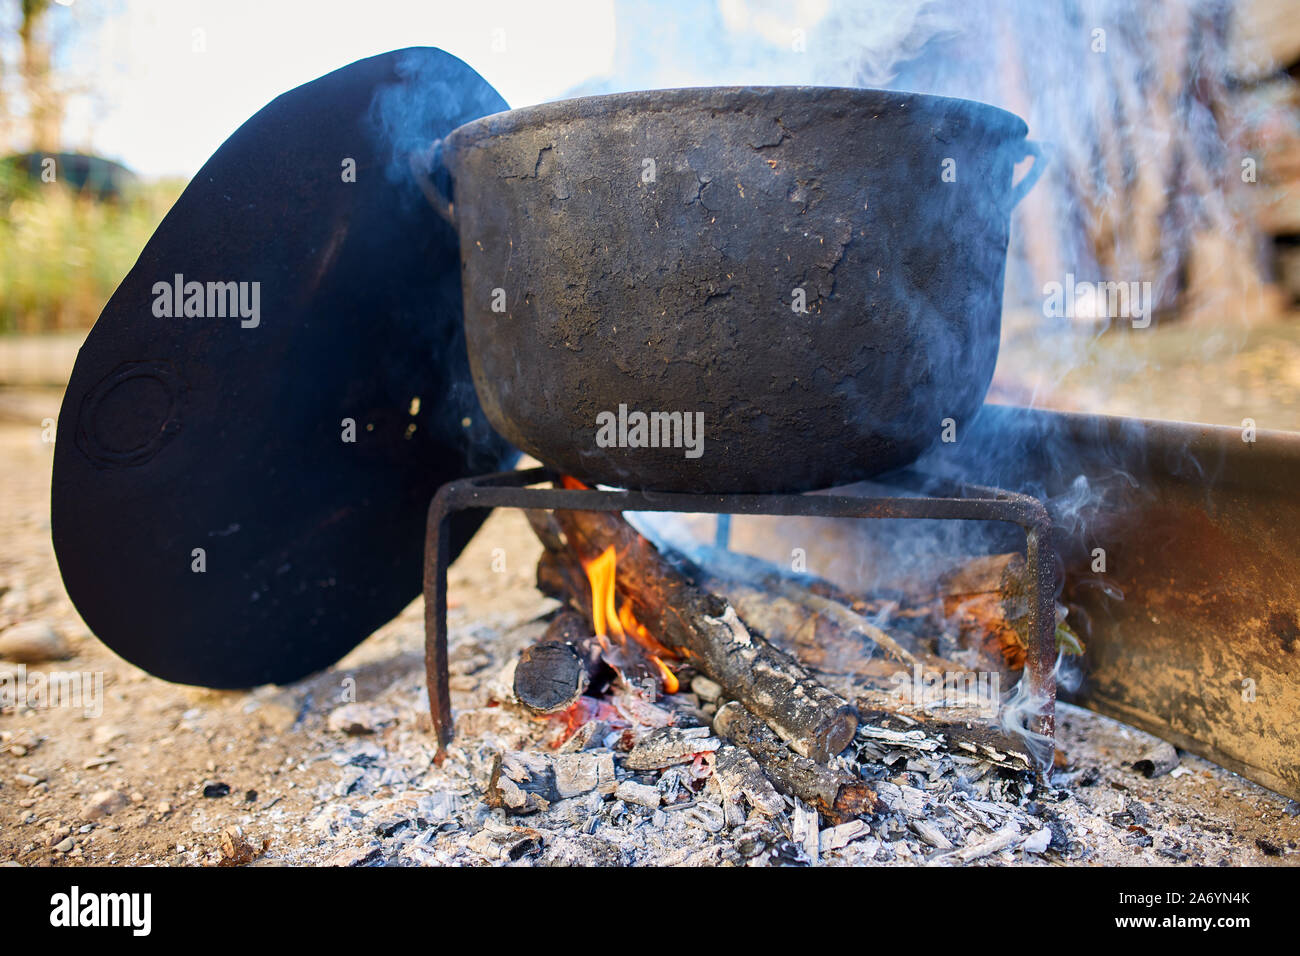 https://c8.alamy.com/comp/2A6YN4K/big-cast-iron-pot-boiling-water-outdoor-in-the-countryside-2A6YN4K.jpg